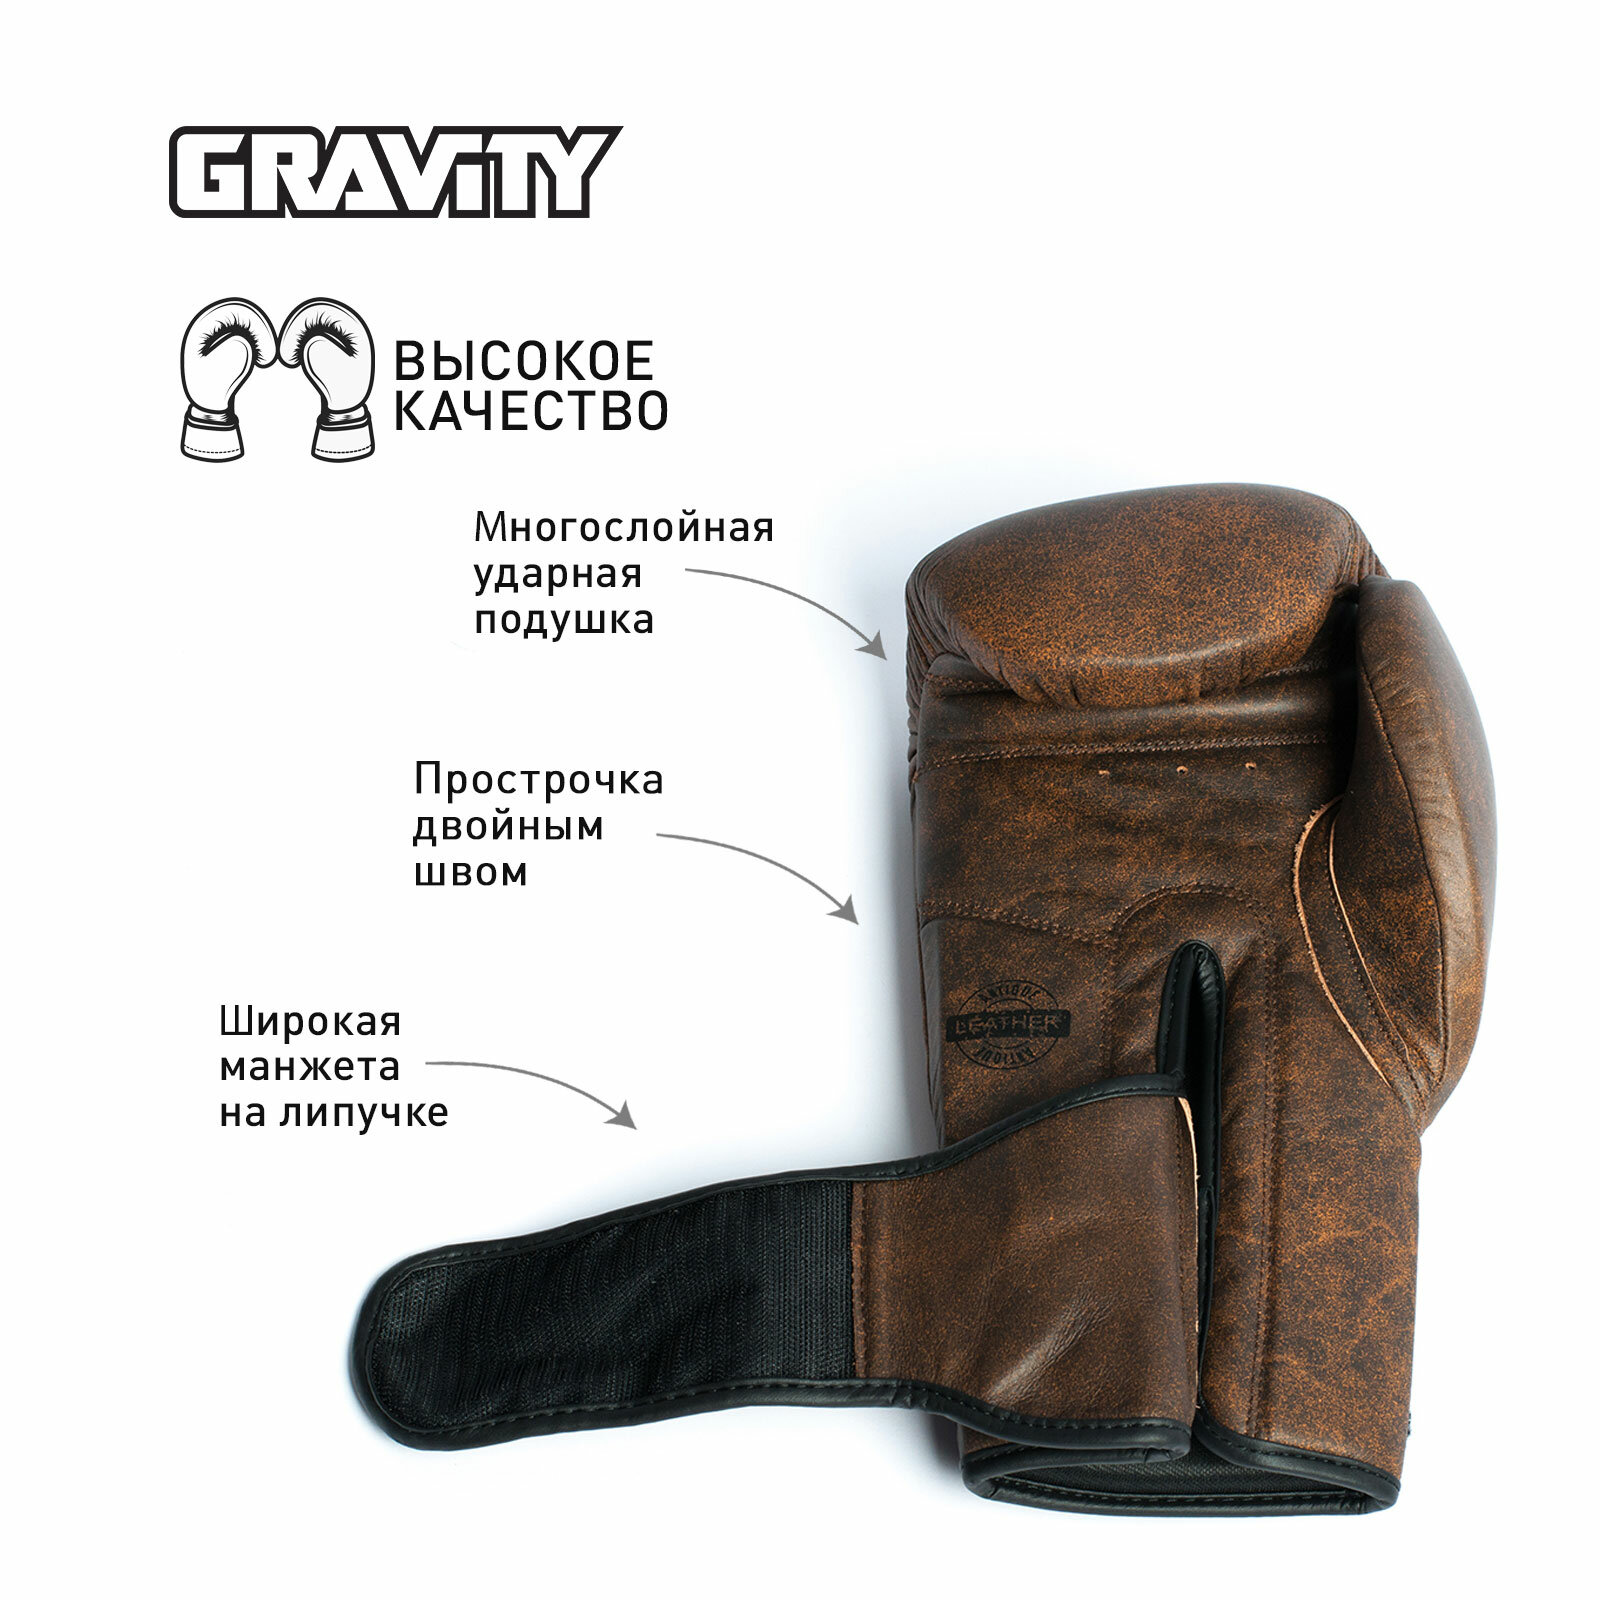 Перчатки для бокса Gravity, антикварная кожа, коричневые, 16 унций